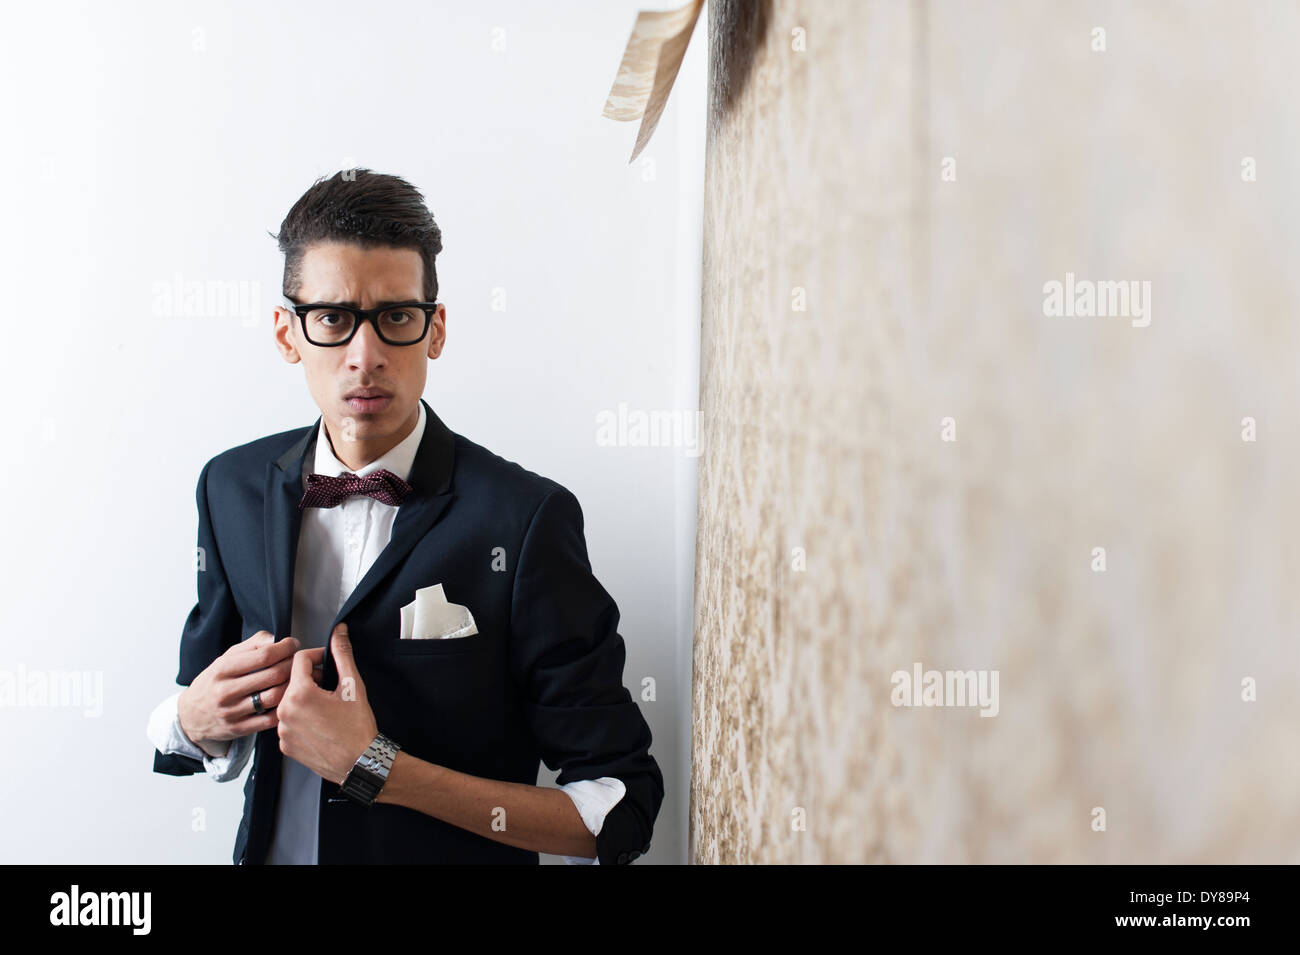 Junge Mann trägt Anzug und Gläser Stockfoto